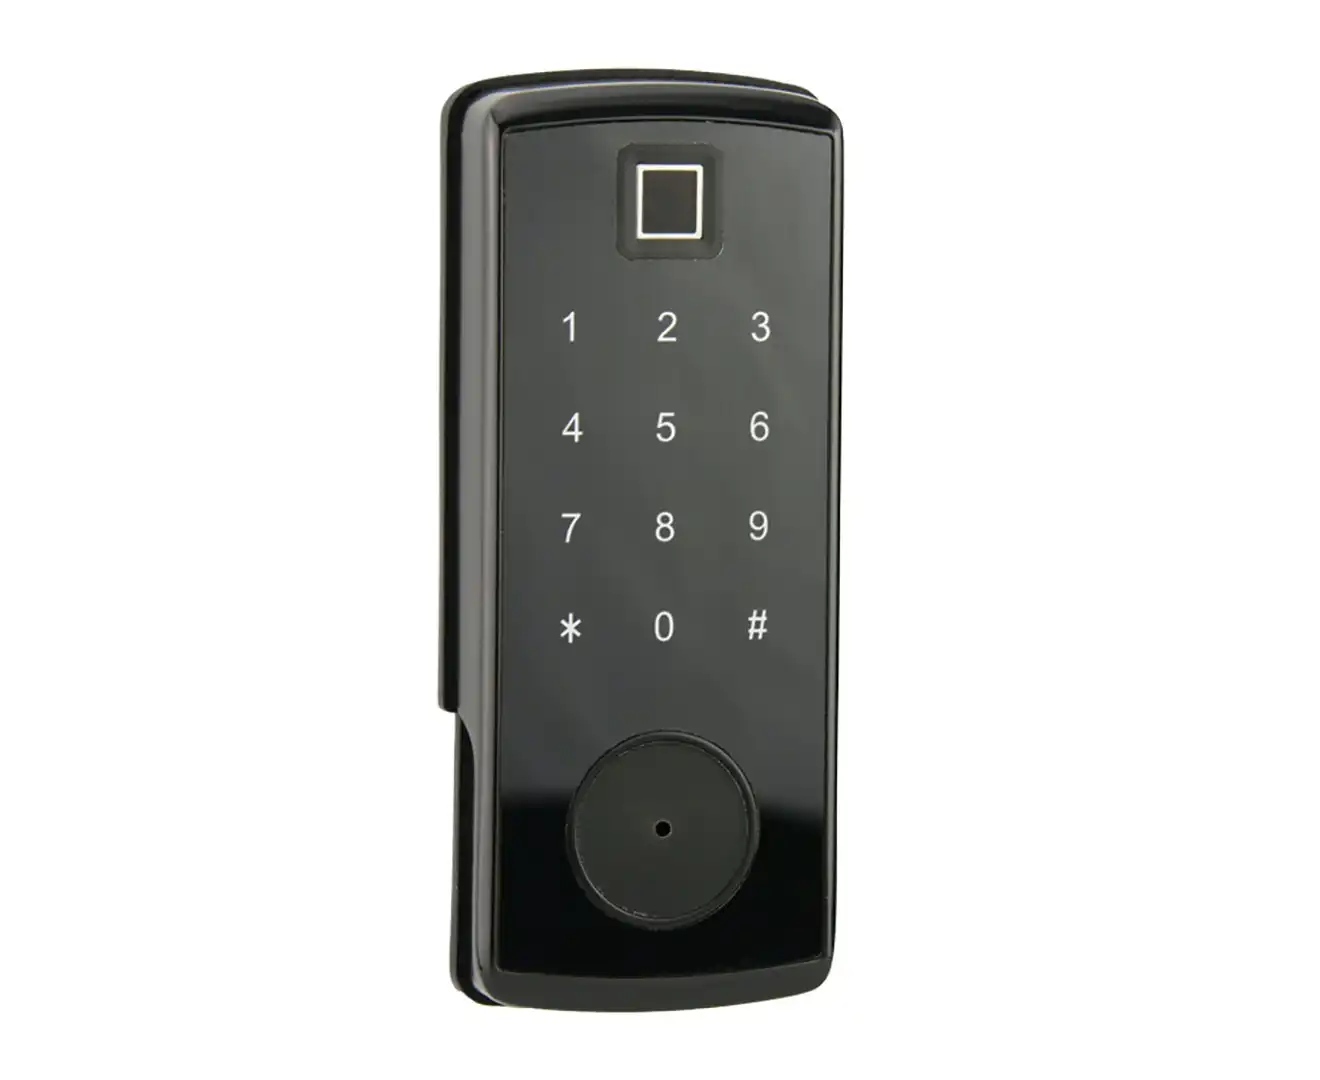 SEKURIT Fingerprint Smart Door Lock with APP CONTROL and Code Entry